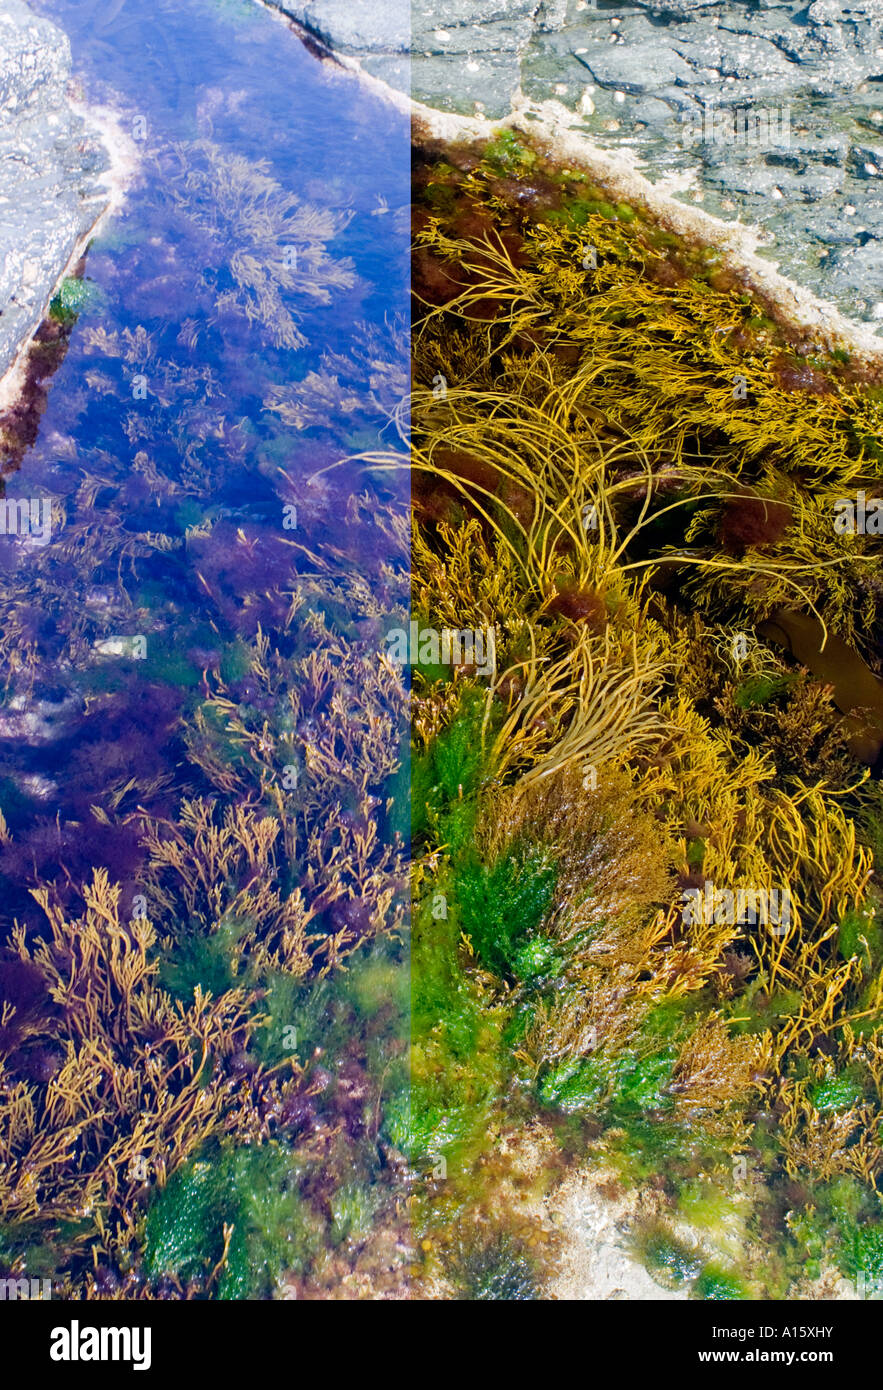 Rockpool con alghe marine. Immagine composita con e senza filtro di polarizzazione per ridurre il riflesso dalla superficie dell'acqua Foto Stock